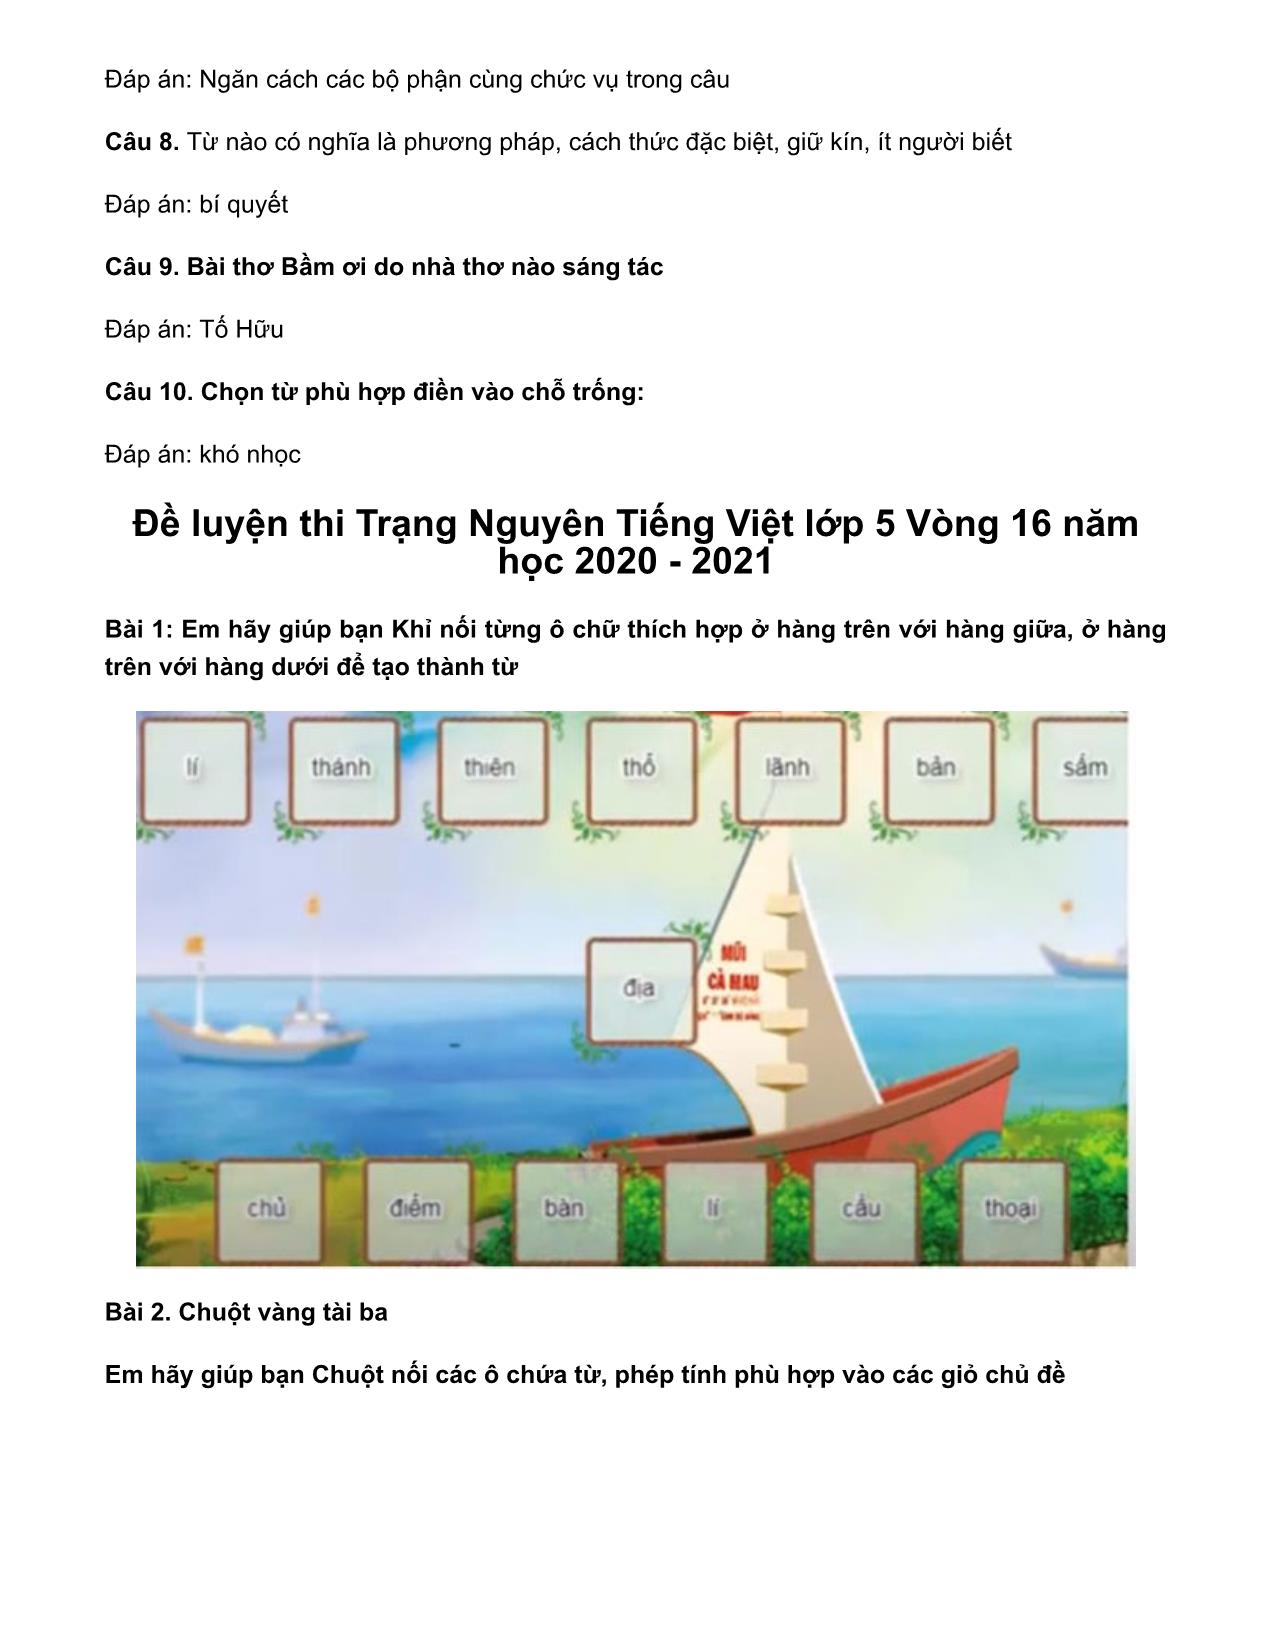 Đề thi Trạng Nguyên Tiếng Việt Lớp 5 - Vòng 17 cấp huyện - Năm học 2020-2021 trang 6